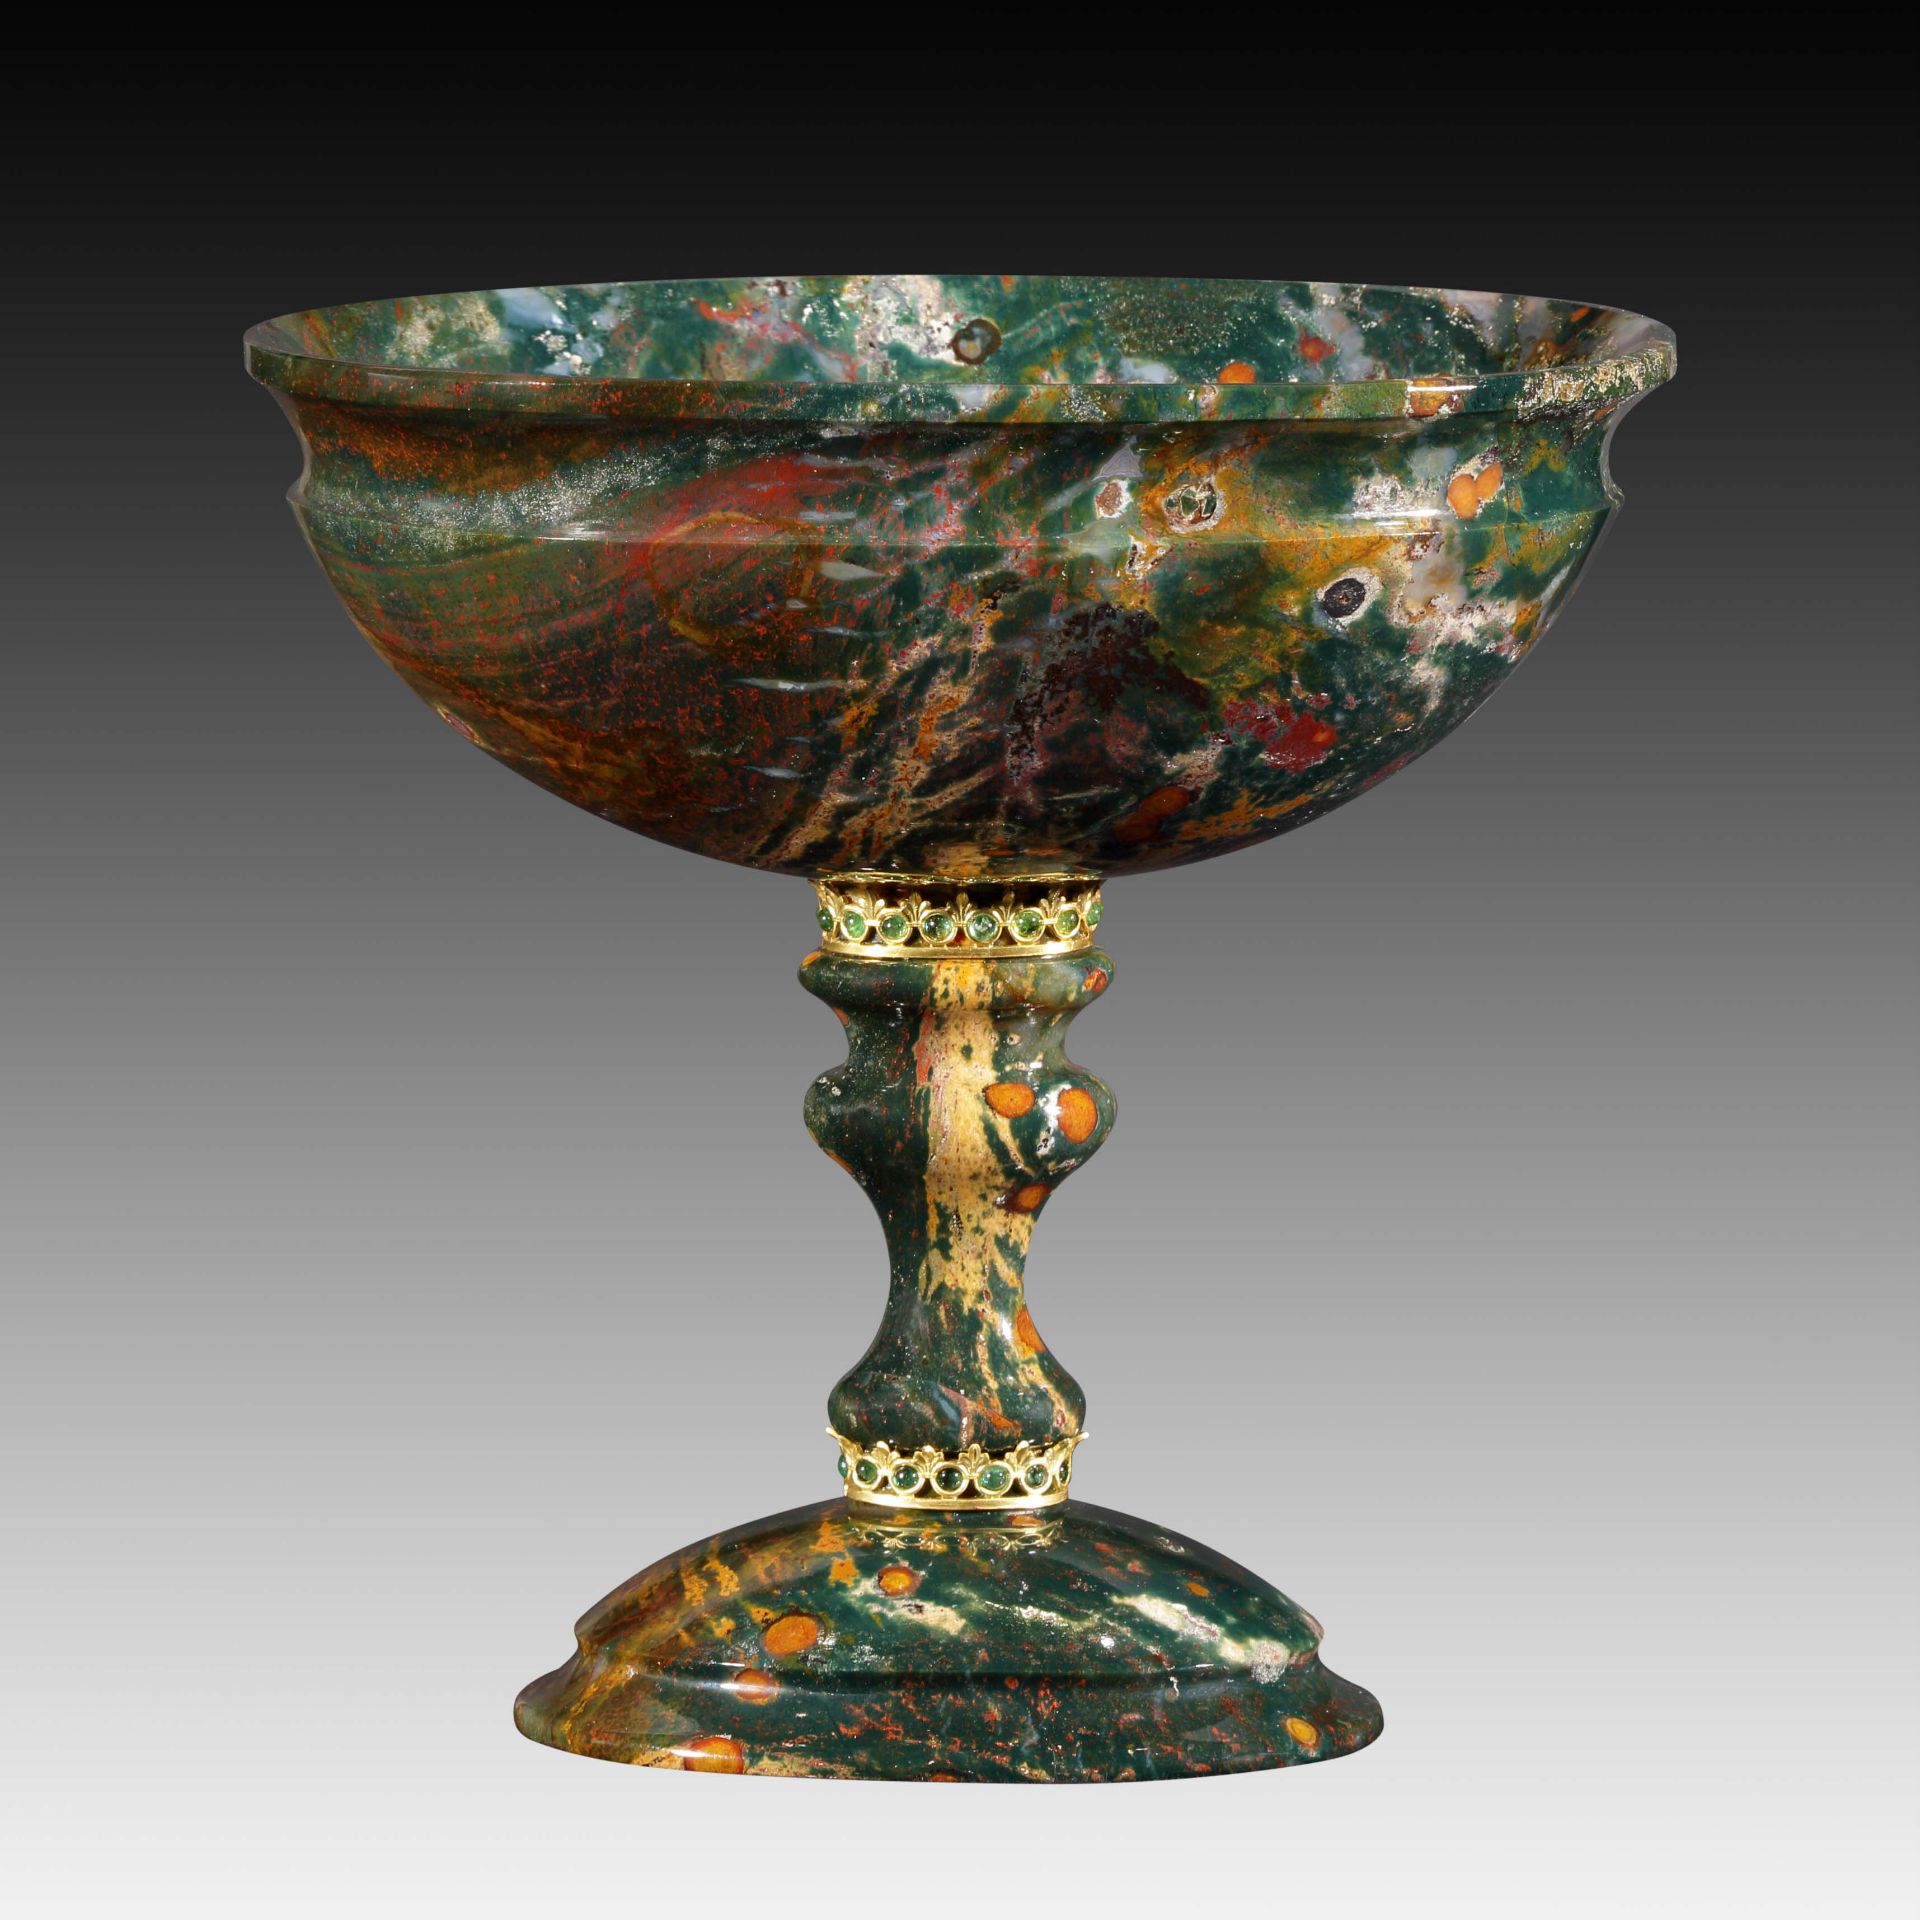 Ovaler Pokal aus grünem Jaspis - Kreation von Manfred Wild - Image 3 of 4